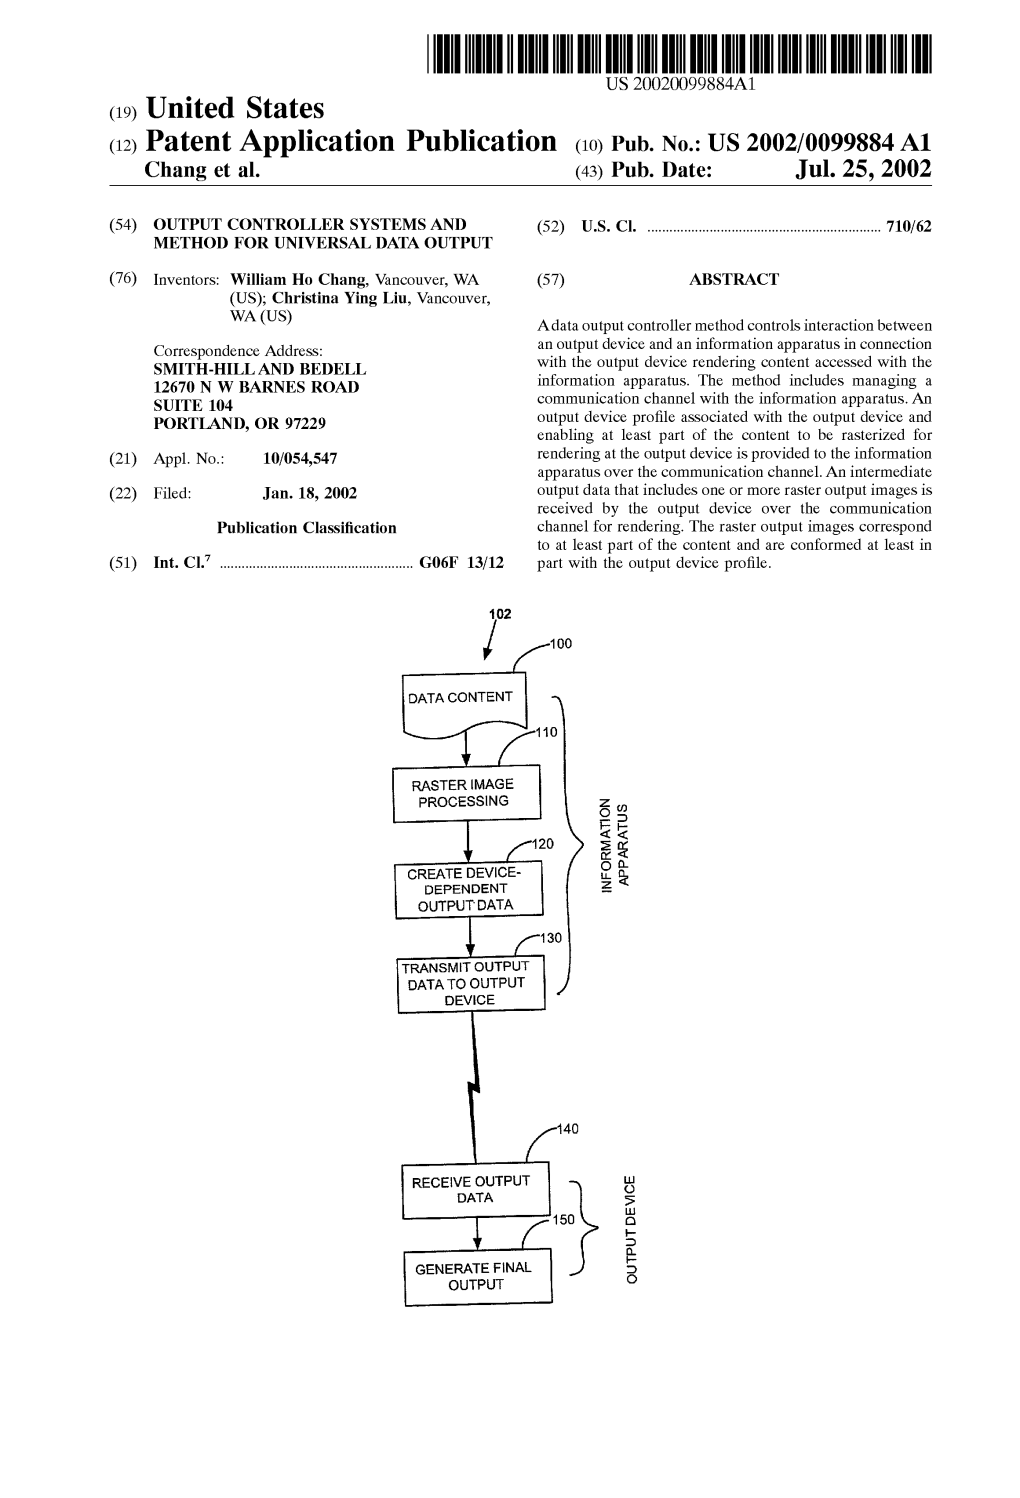 (12) Patent Application Publication (10) Pub. No.: US 2002/0099884A1 Chang Et Al